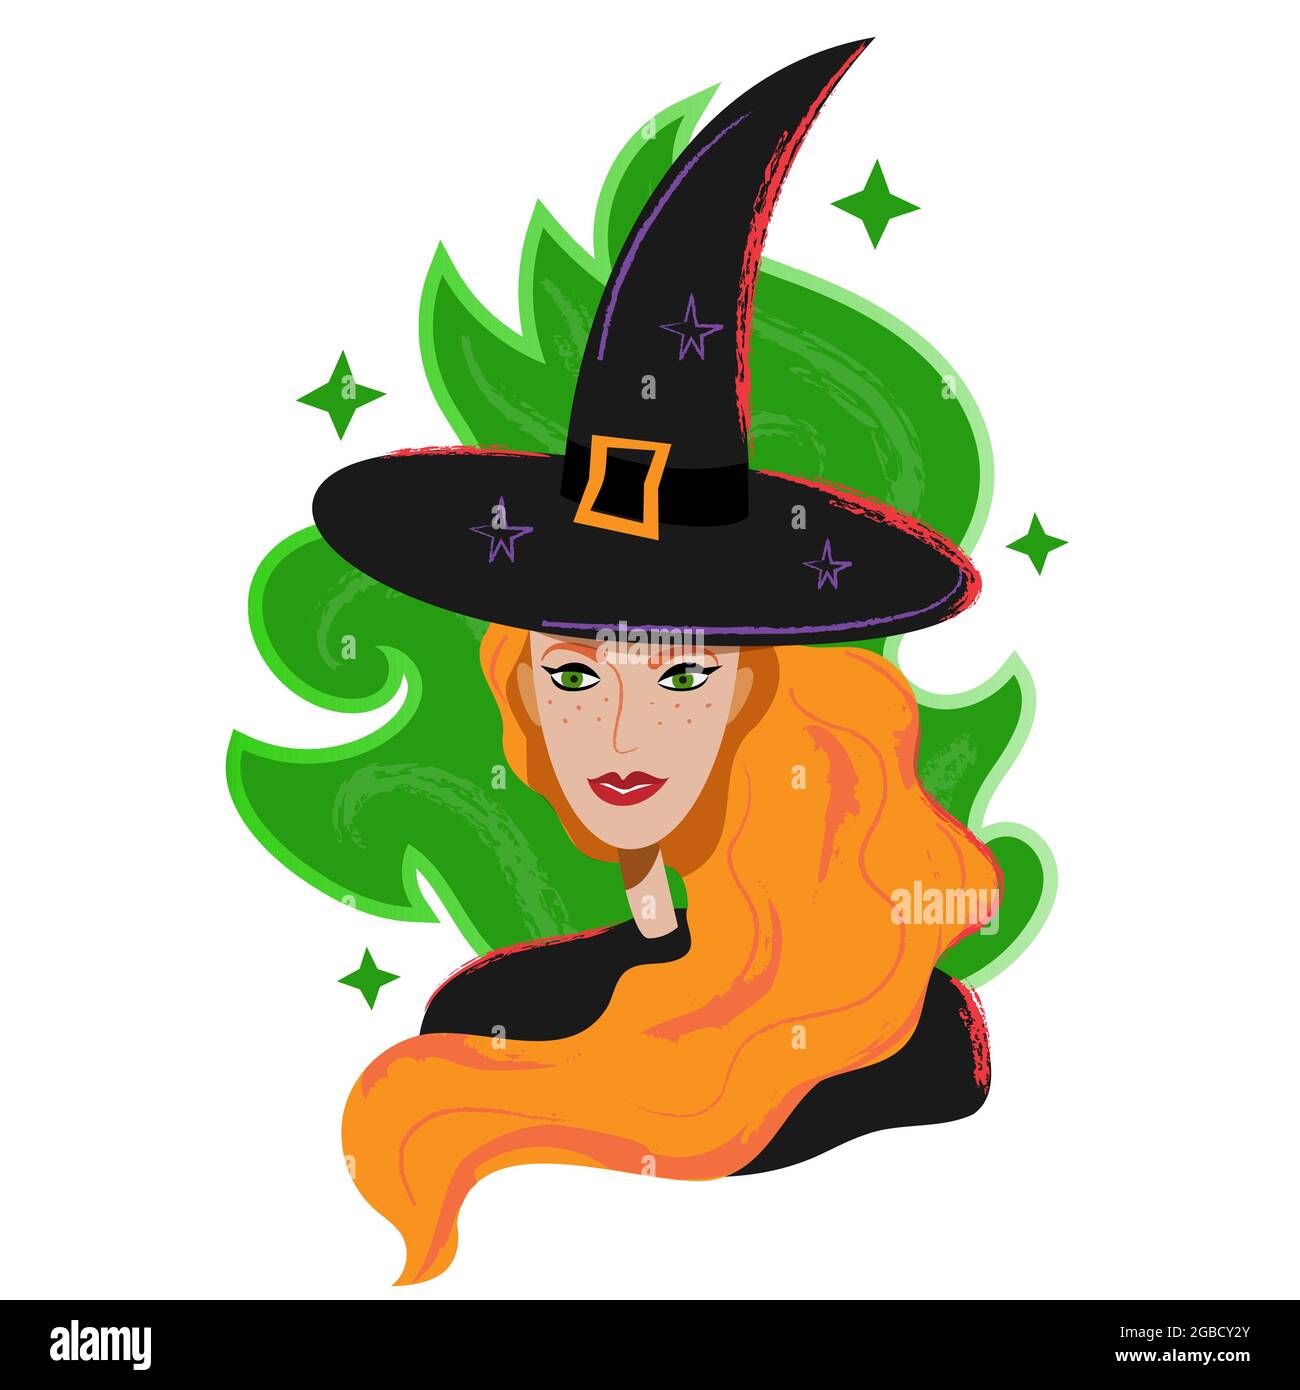 Hexenporträt in schwarzem Hut und roten Haaren. Halloween rote Hexe Avatar in Cartoon flachen Stil. Magisches rothaariges Charakterporträt isoliert auf Weiß Stock Vektor